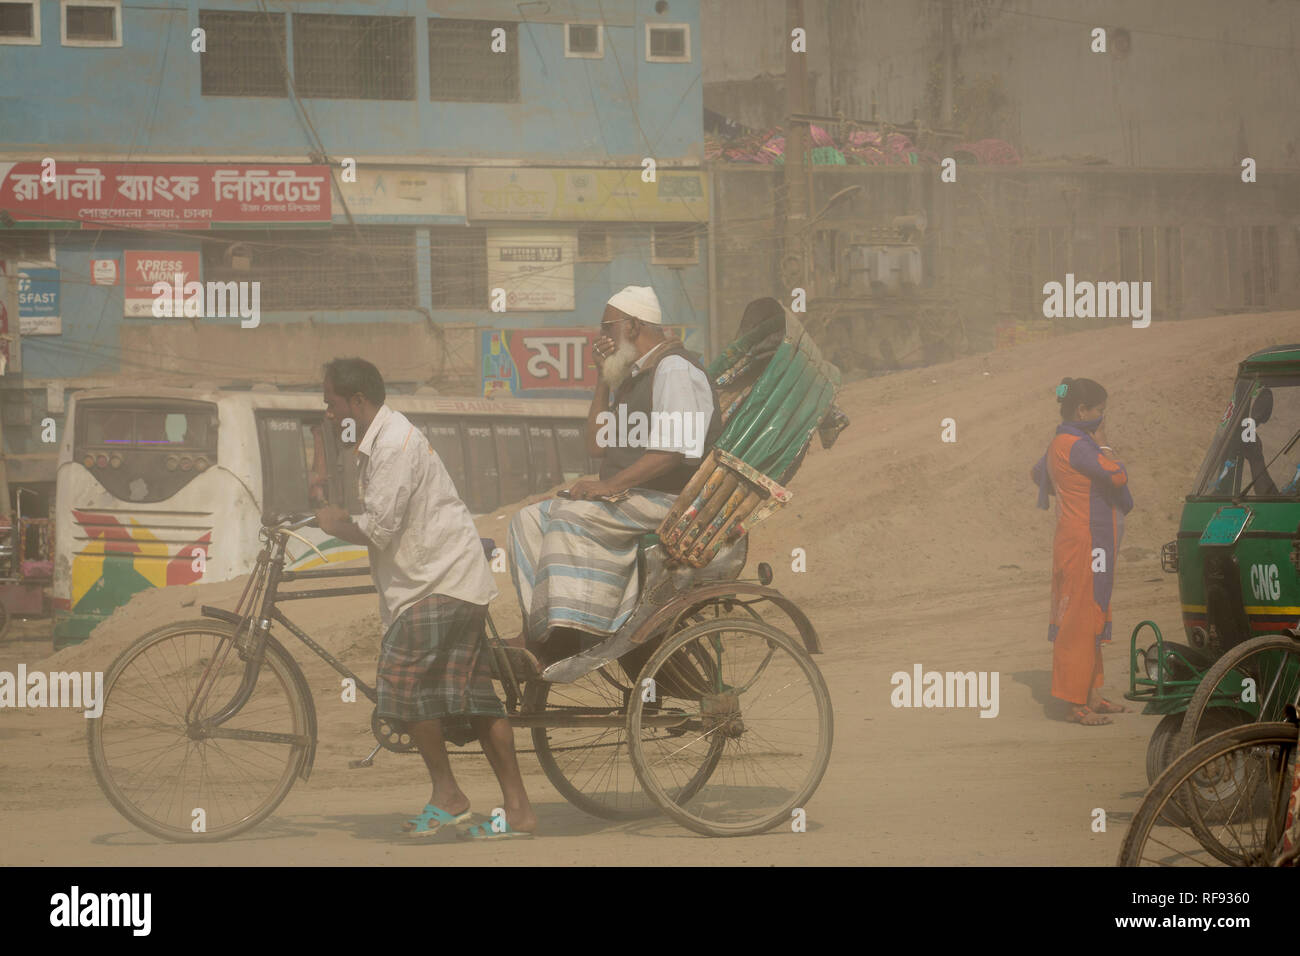 Dacca in Bangladesh - gennaio 23 : inquinamento da polveri raggiunge un allarmante fase di Dhaka e molti morti nonché diversi milioni di casi di malattia si verificano ogni anno a causa della scarsa qualità dell'aria a Dhaka, nel Bangladesh il 23 gennaio 2019. La polvere a calci dai veicoli che viaggiano su strade possono costituire il 33% dell'inquinamento dell'aria. Polvere di strada è costituito da depositi di scarichi di autoveicoli e scarichi industriali, particelle dal pneumatico e l'usura del freno, polvere da strade asfaltate o buche e polvere da siti di costruzione. Polvere di strada è una fonte significativa di contribuire alla generazione e rilascio di materiale particolato nella Foto Stock